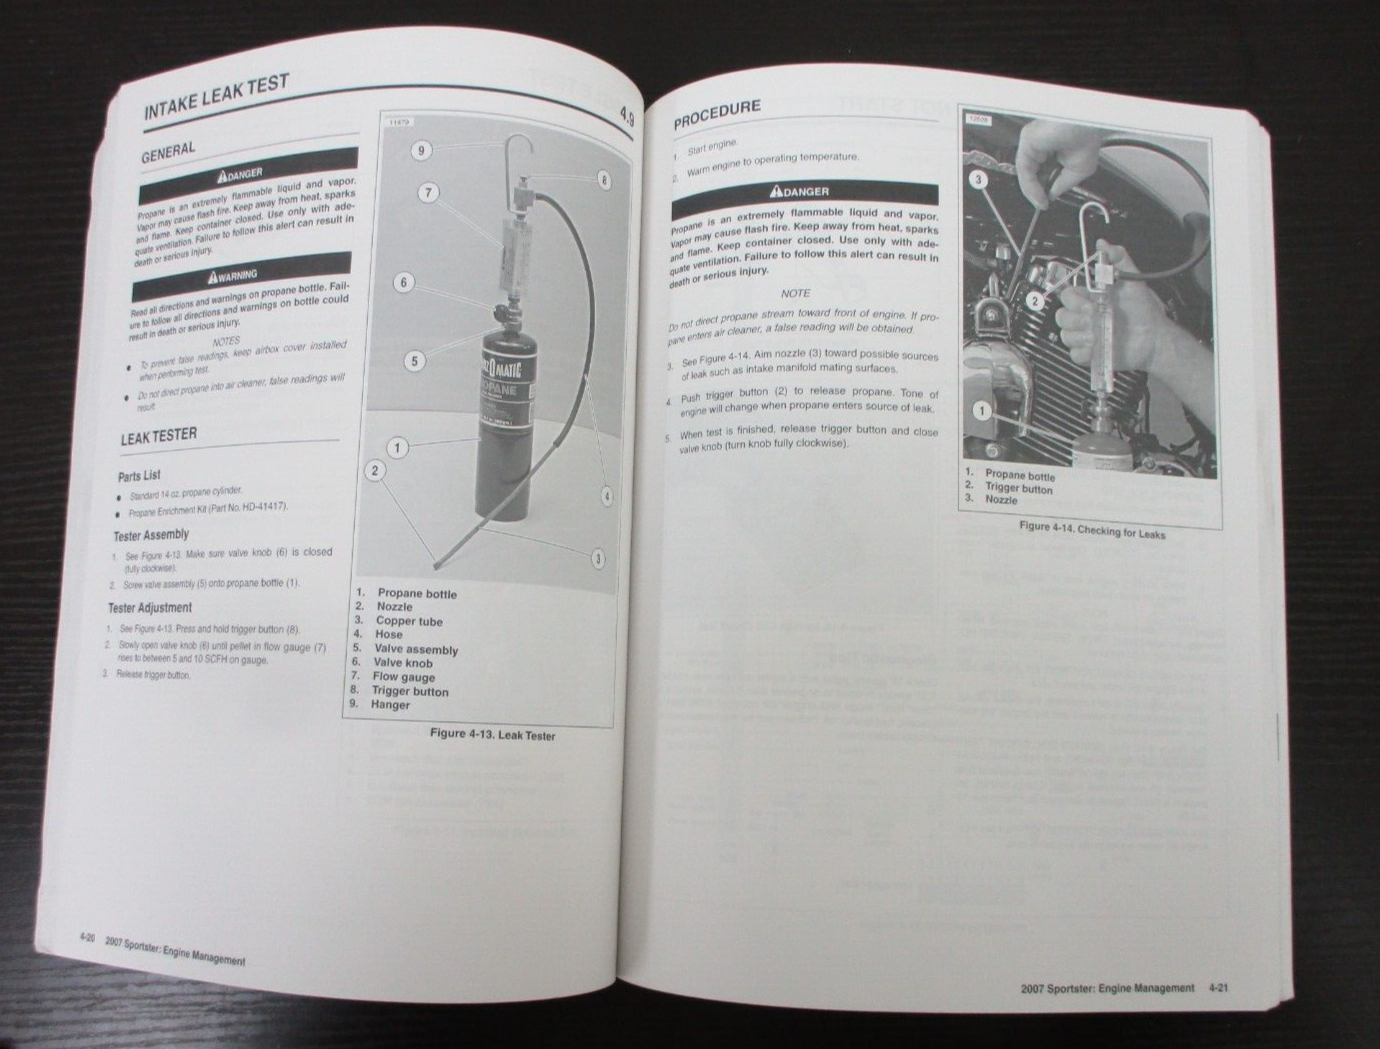 Harley-Davidson Sportster Models 2007 Electrical Diagnostic Manual  99495-07